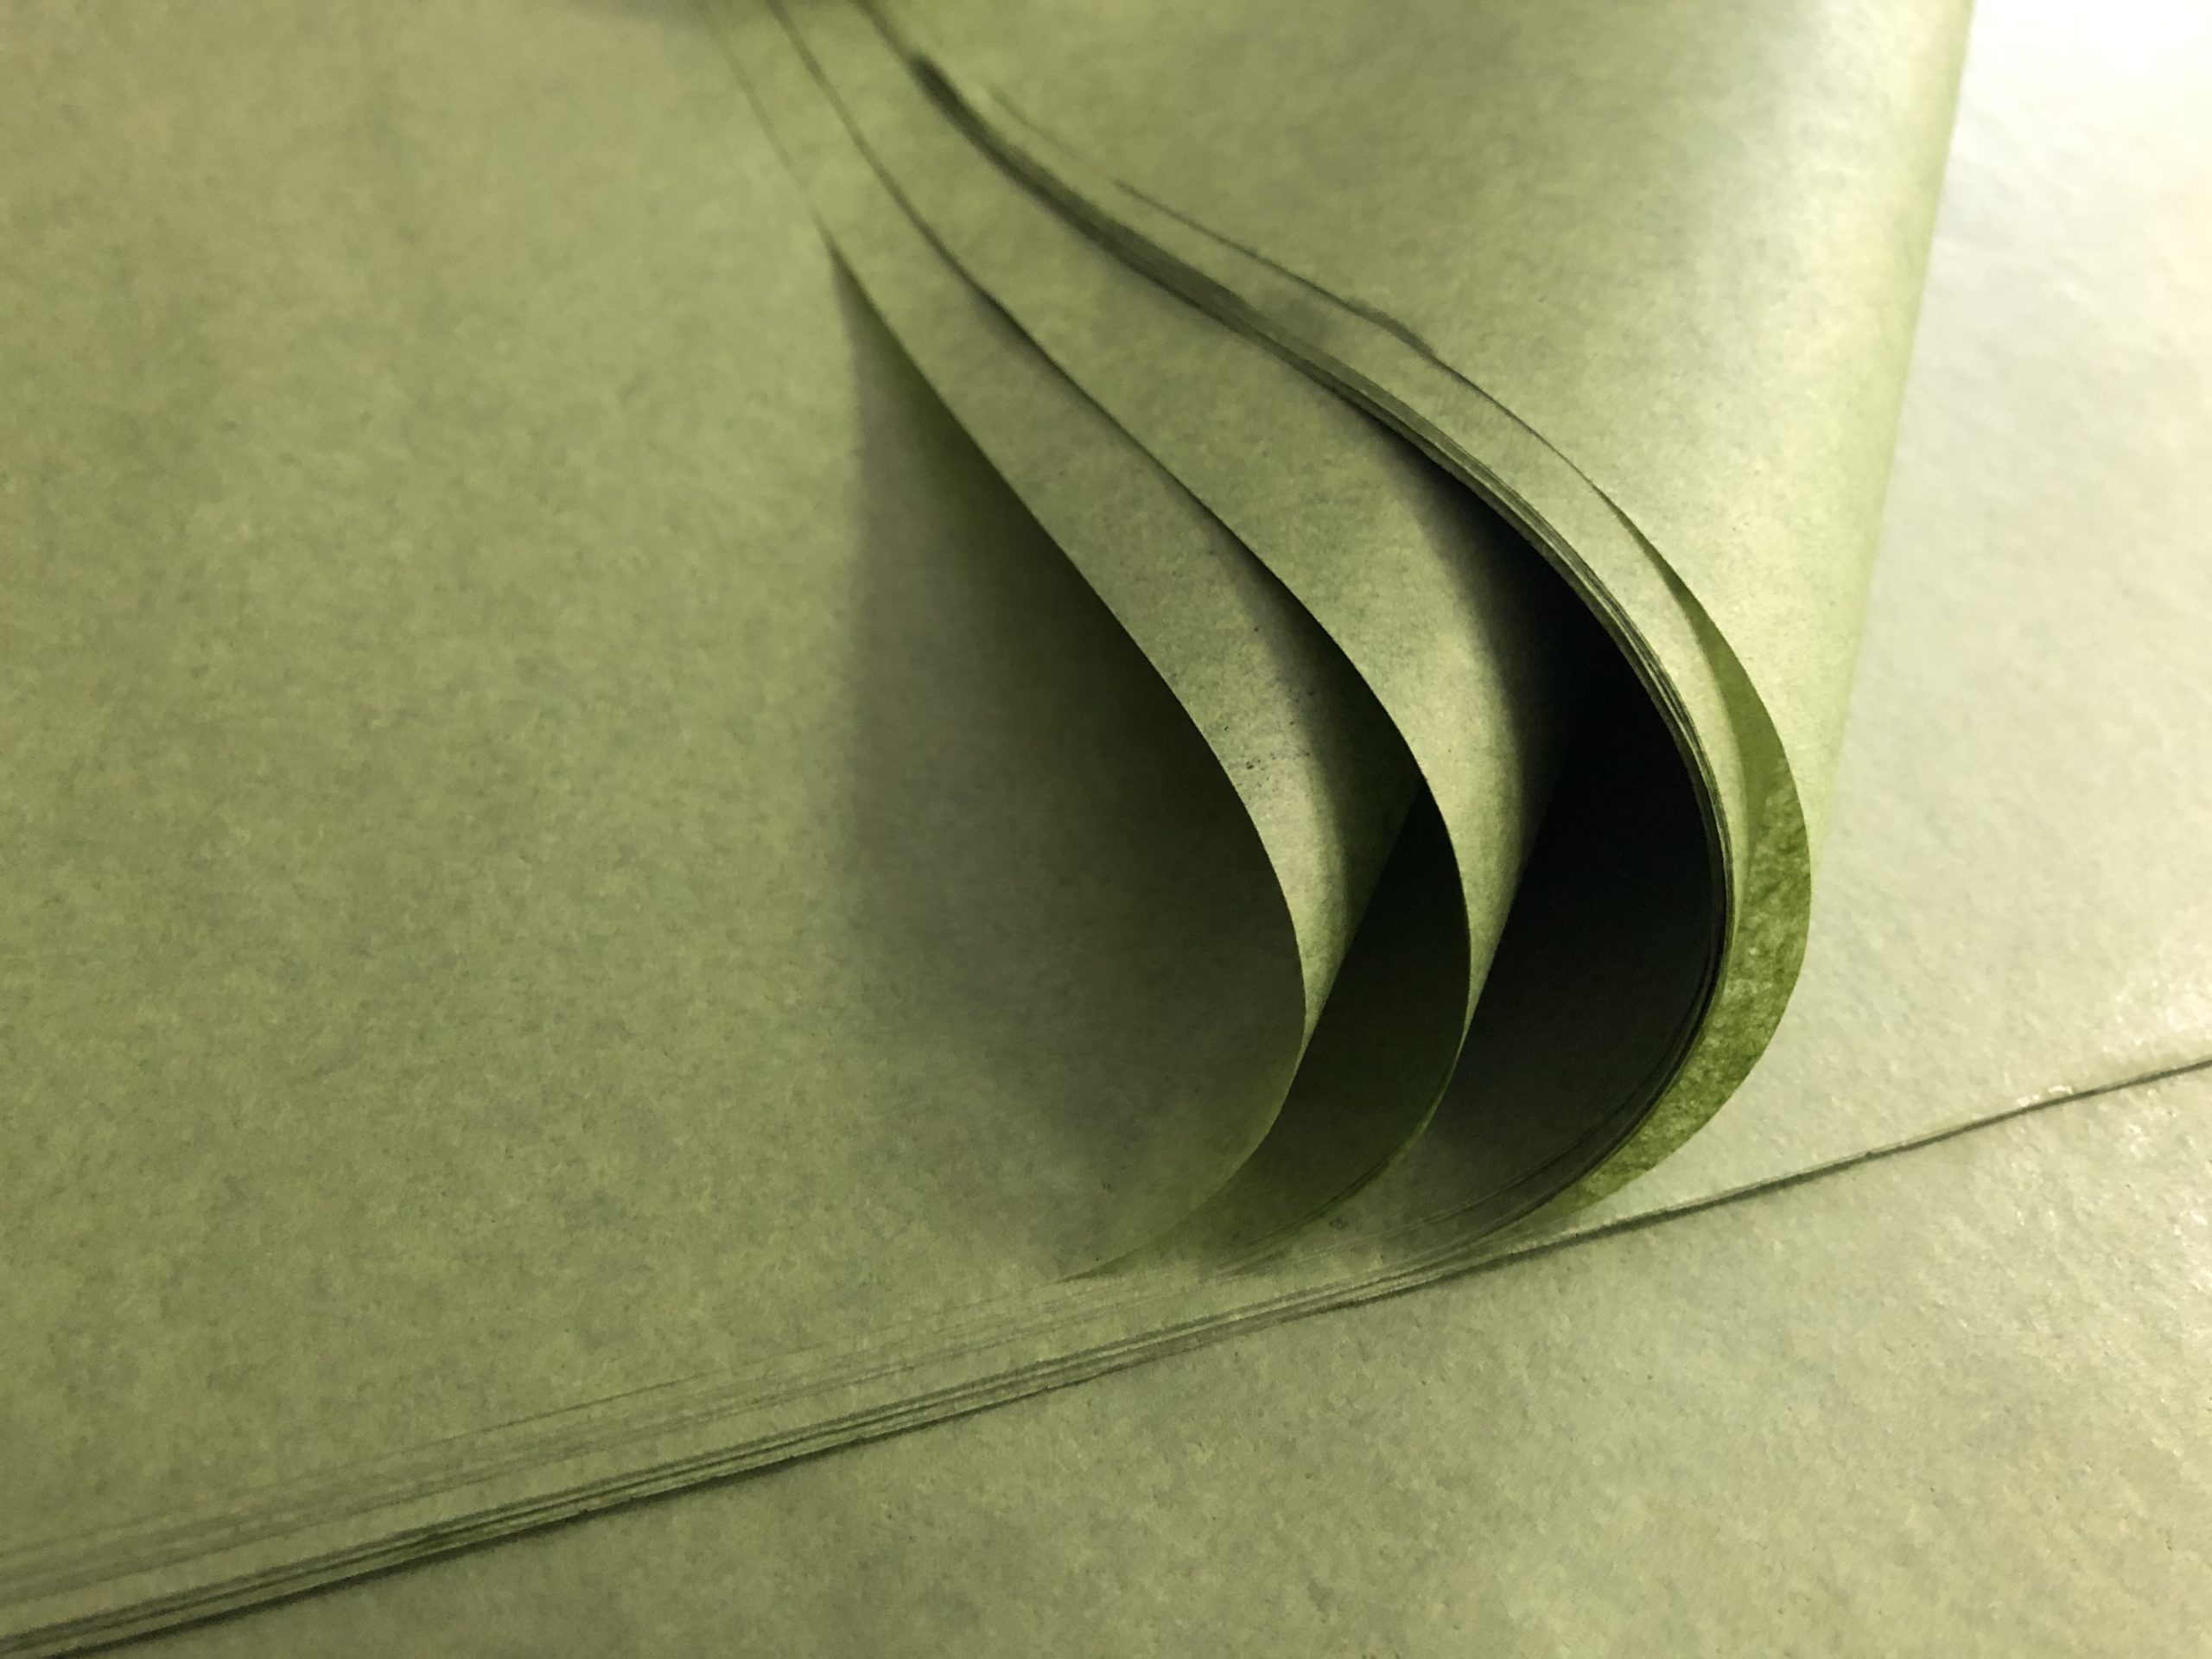 Papier de soie noir en feuilles